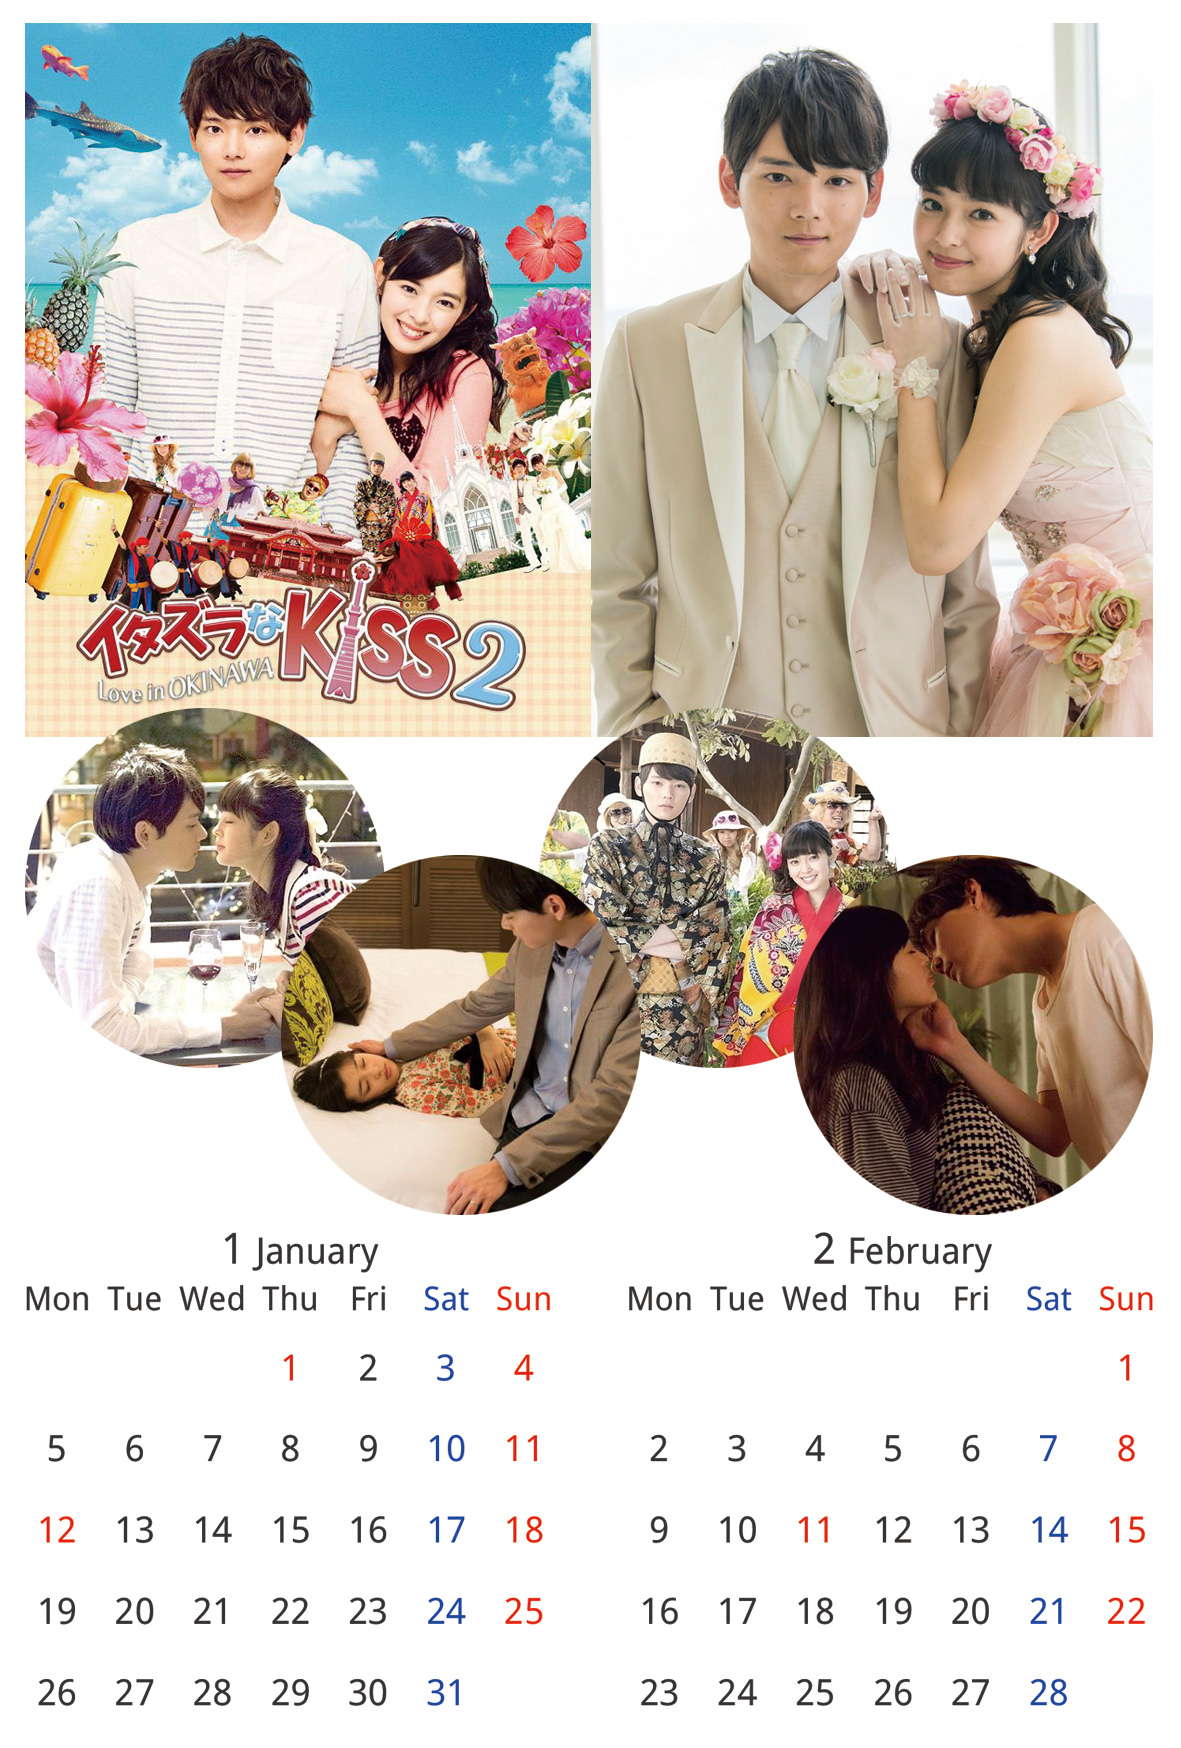 イタキスカレンダー15 2ヶ月カレンダー 月曜はじまり カレンダー 古川雄輝くんにお花を贈り隊